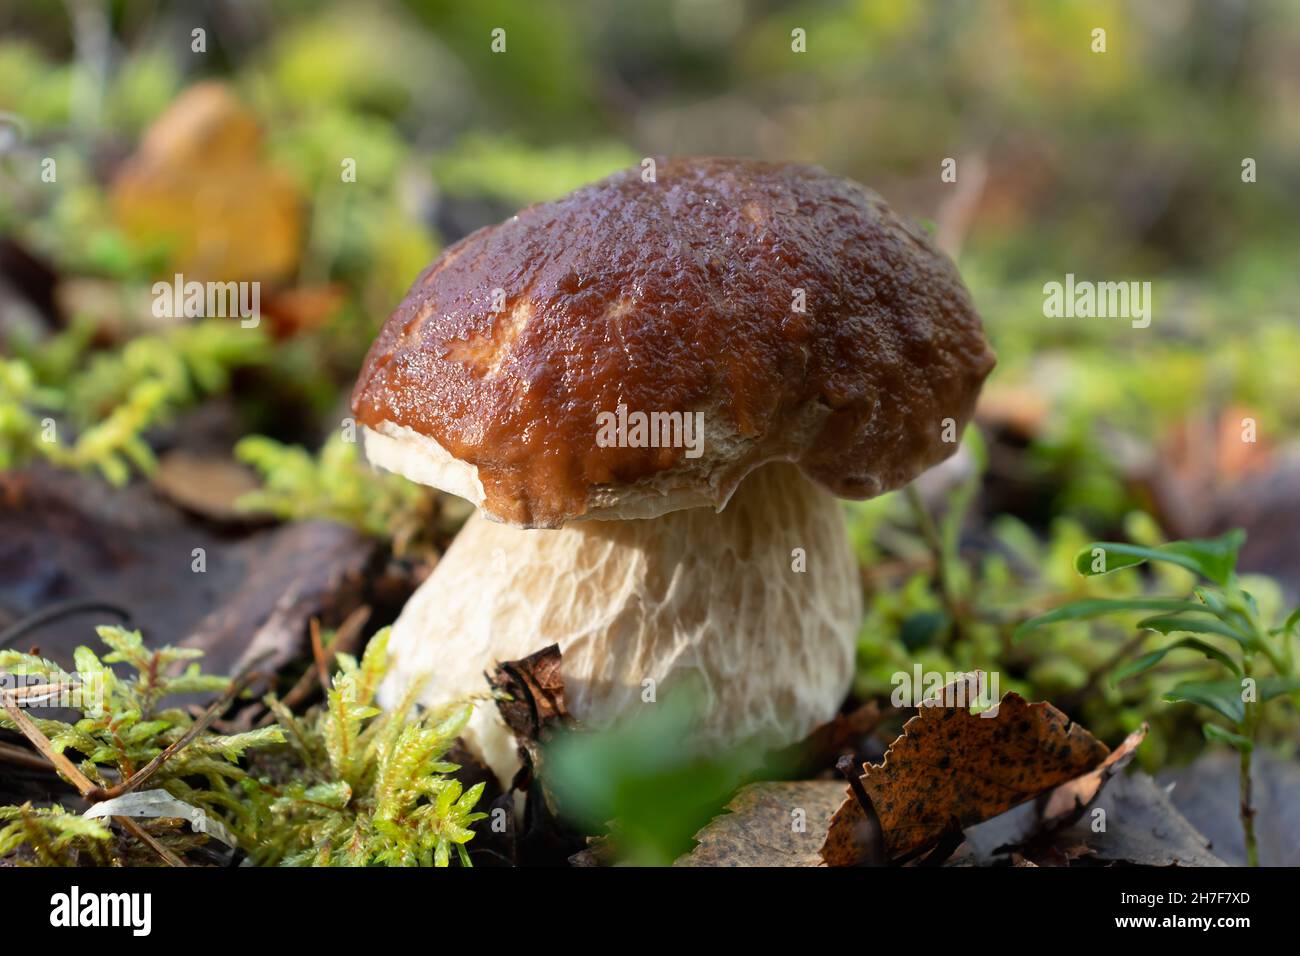 Beau jeune champignon boletus comestible dans une forêt de pins Banque D'Images